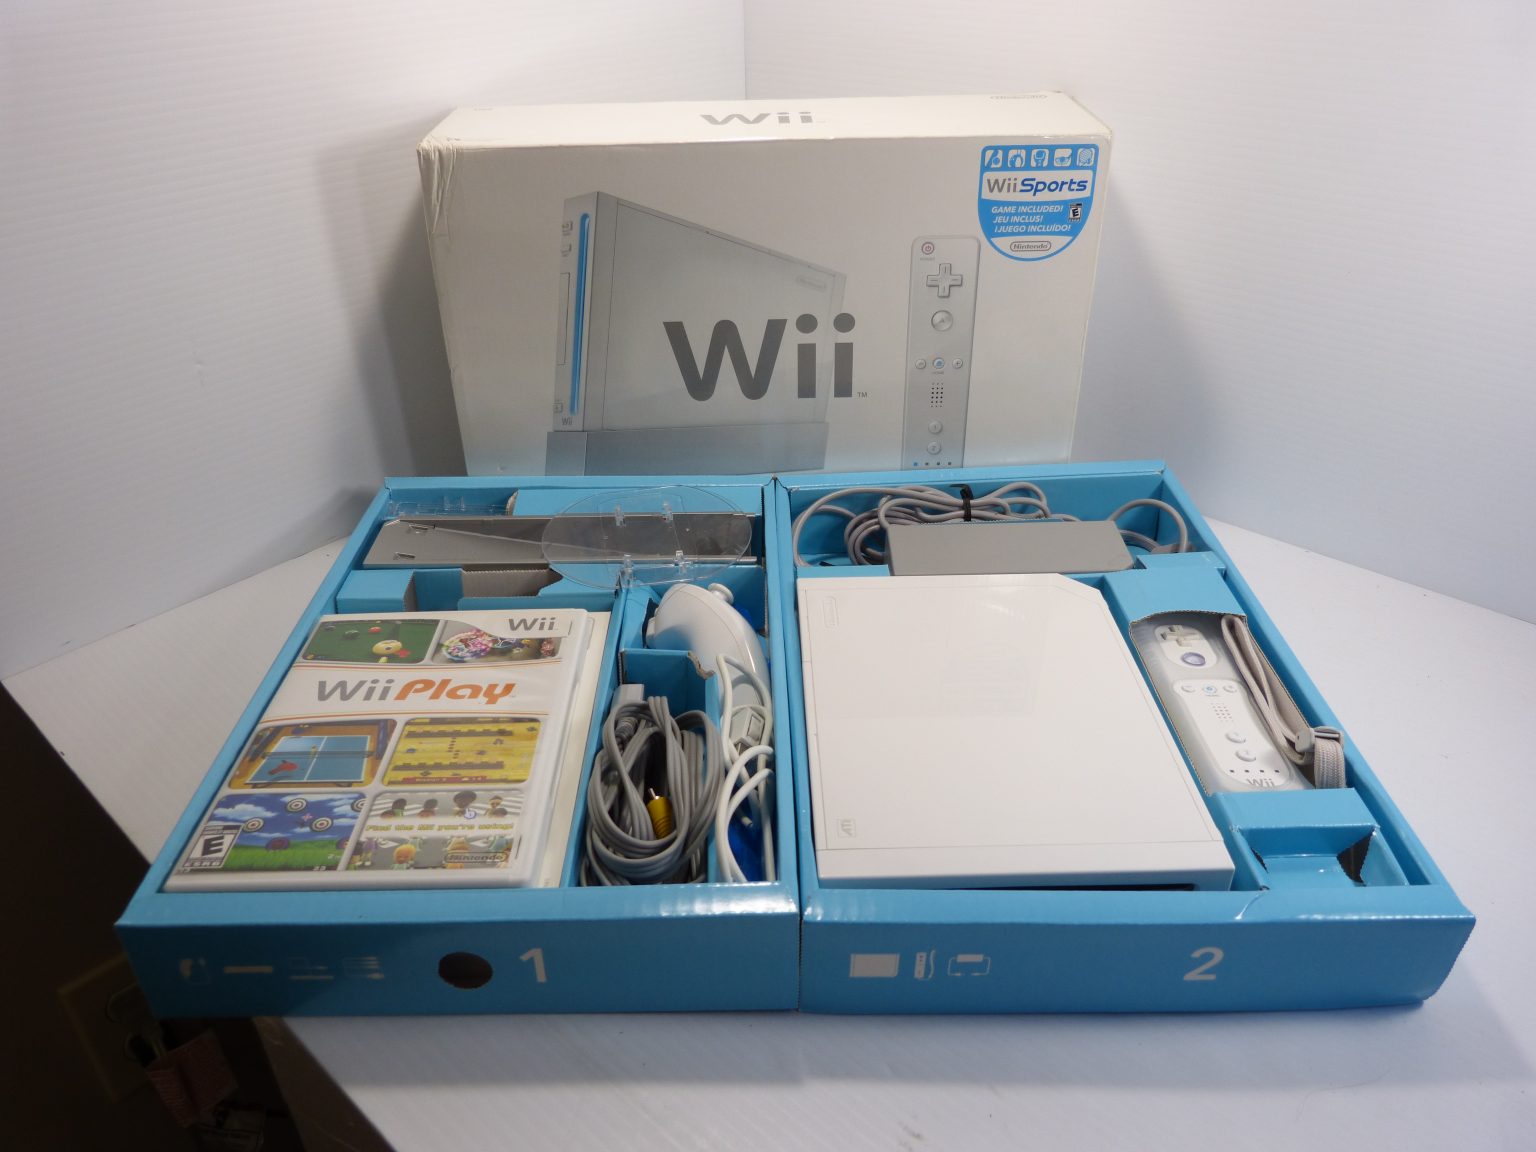 Nintendo Wii White Rvl 001 Console Sports Bundle Wbox Tested Kiwanis Marketplace 5668